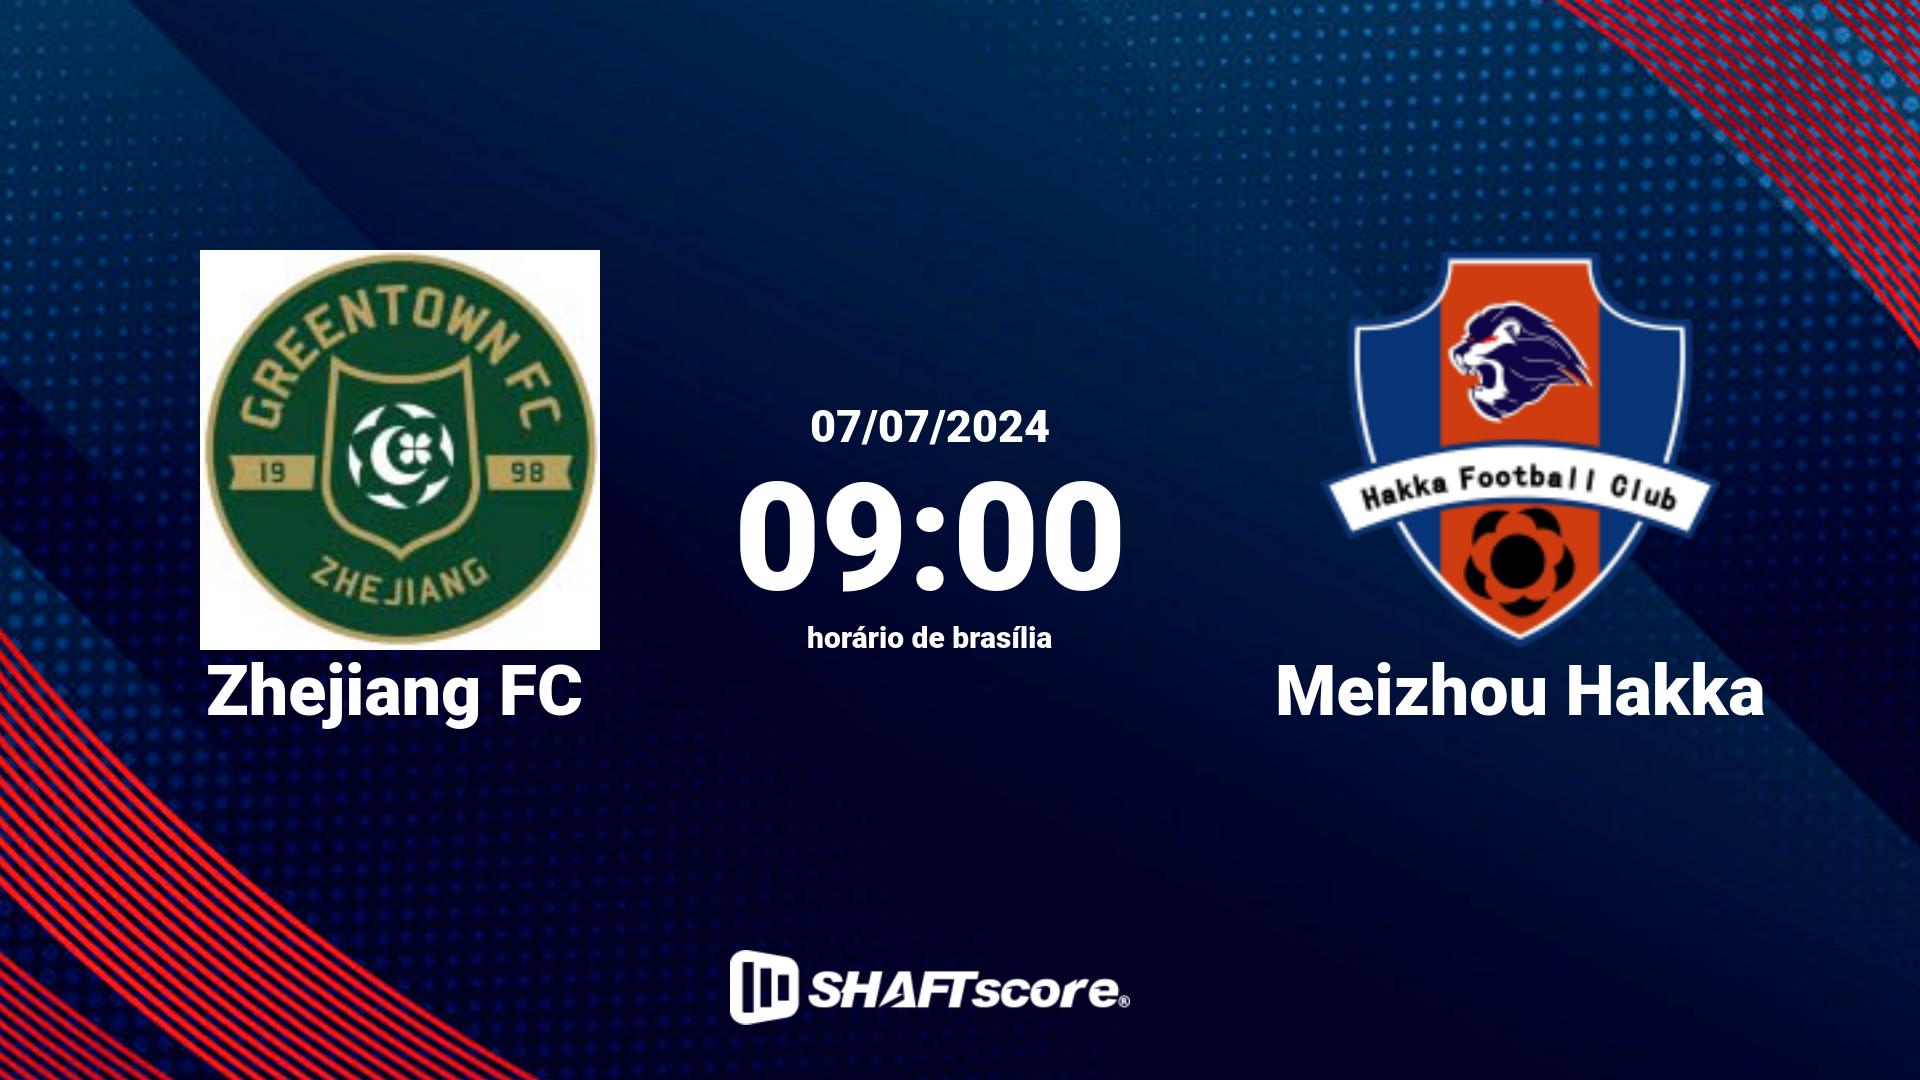 Estatísticas do jogo Zhejiang FC vs Meizhou Hakka 07.07 09:00